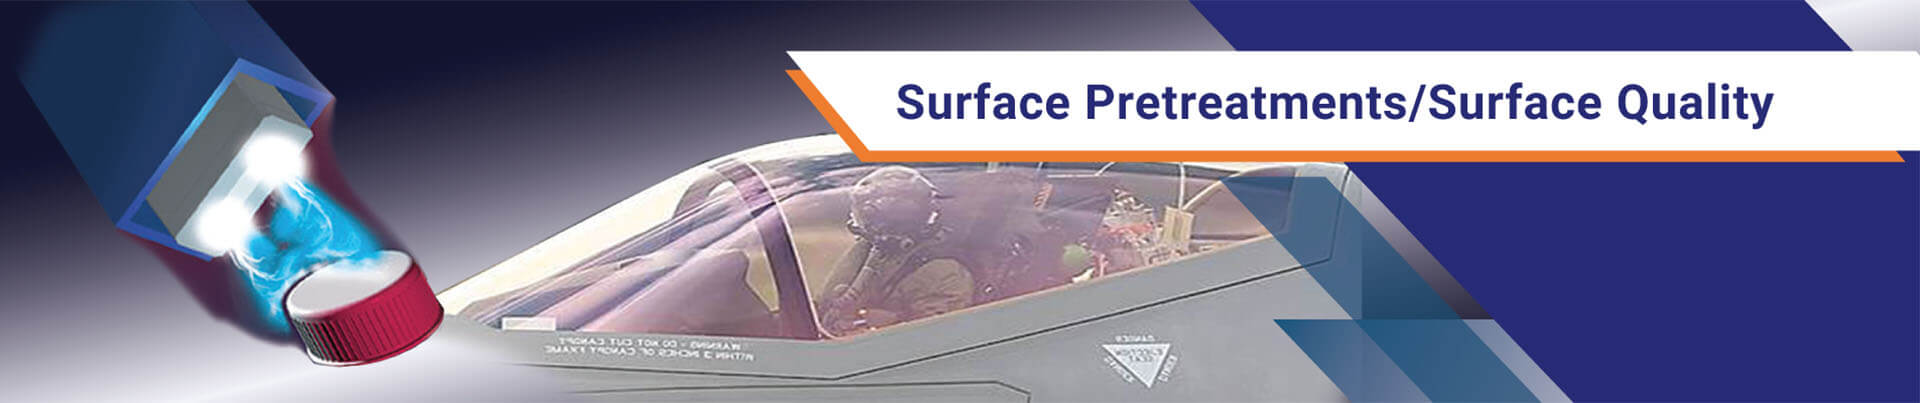 surface-pretreatments-slide